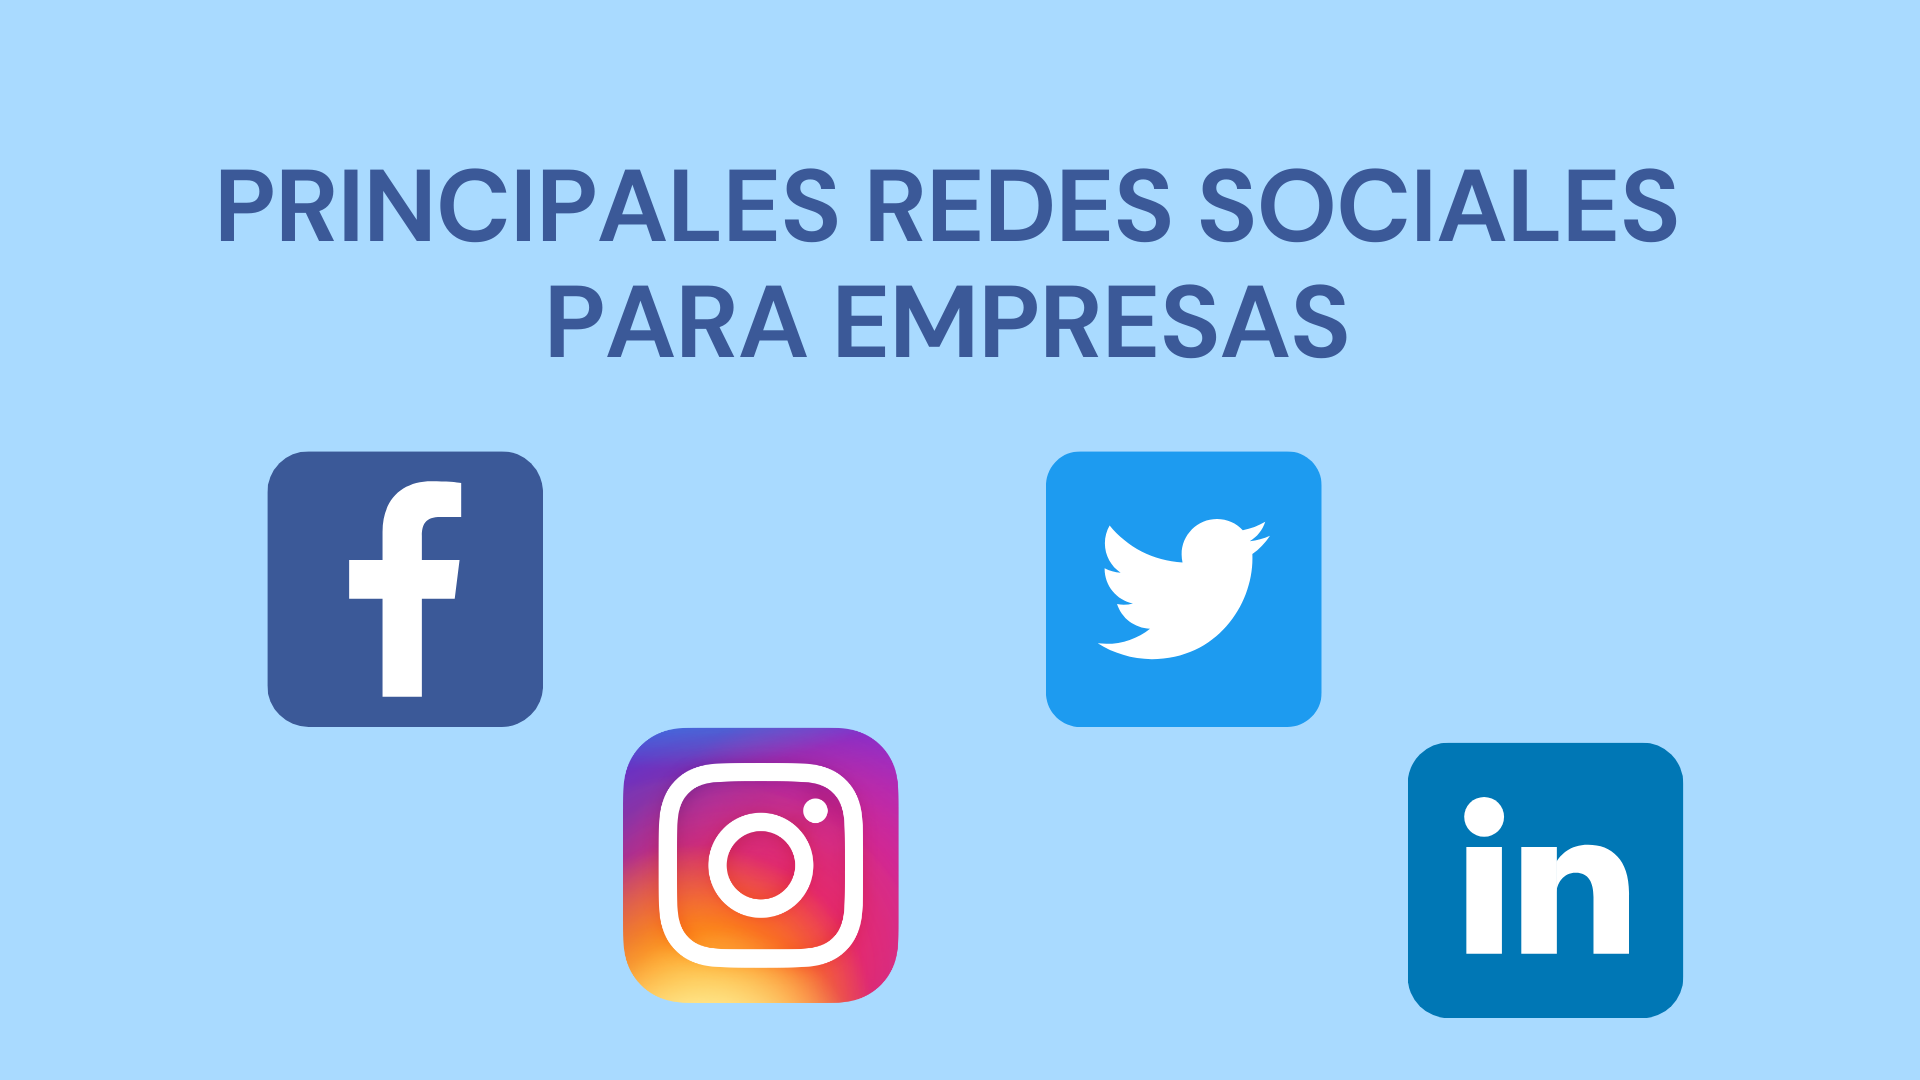 Principales Redes Sociales Para Empresas: Twitter, Facebook, Instagram Y LinkedIn